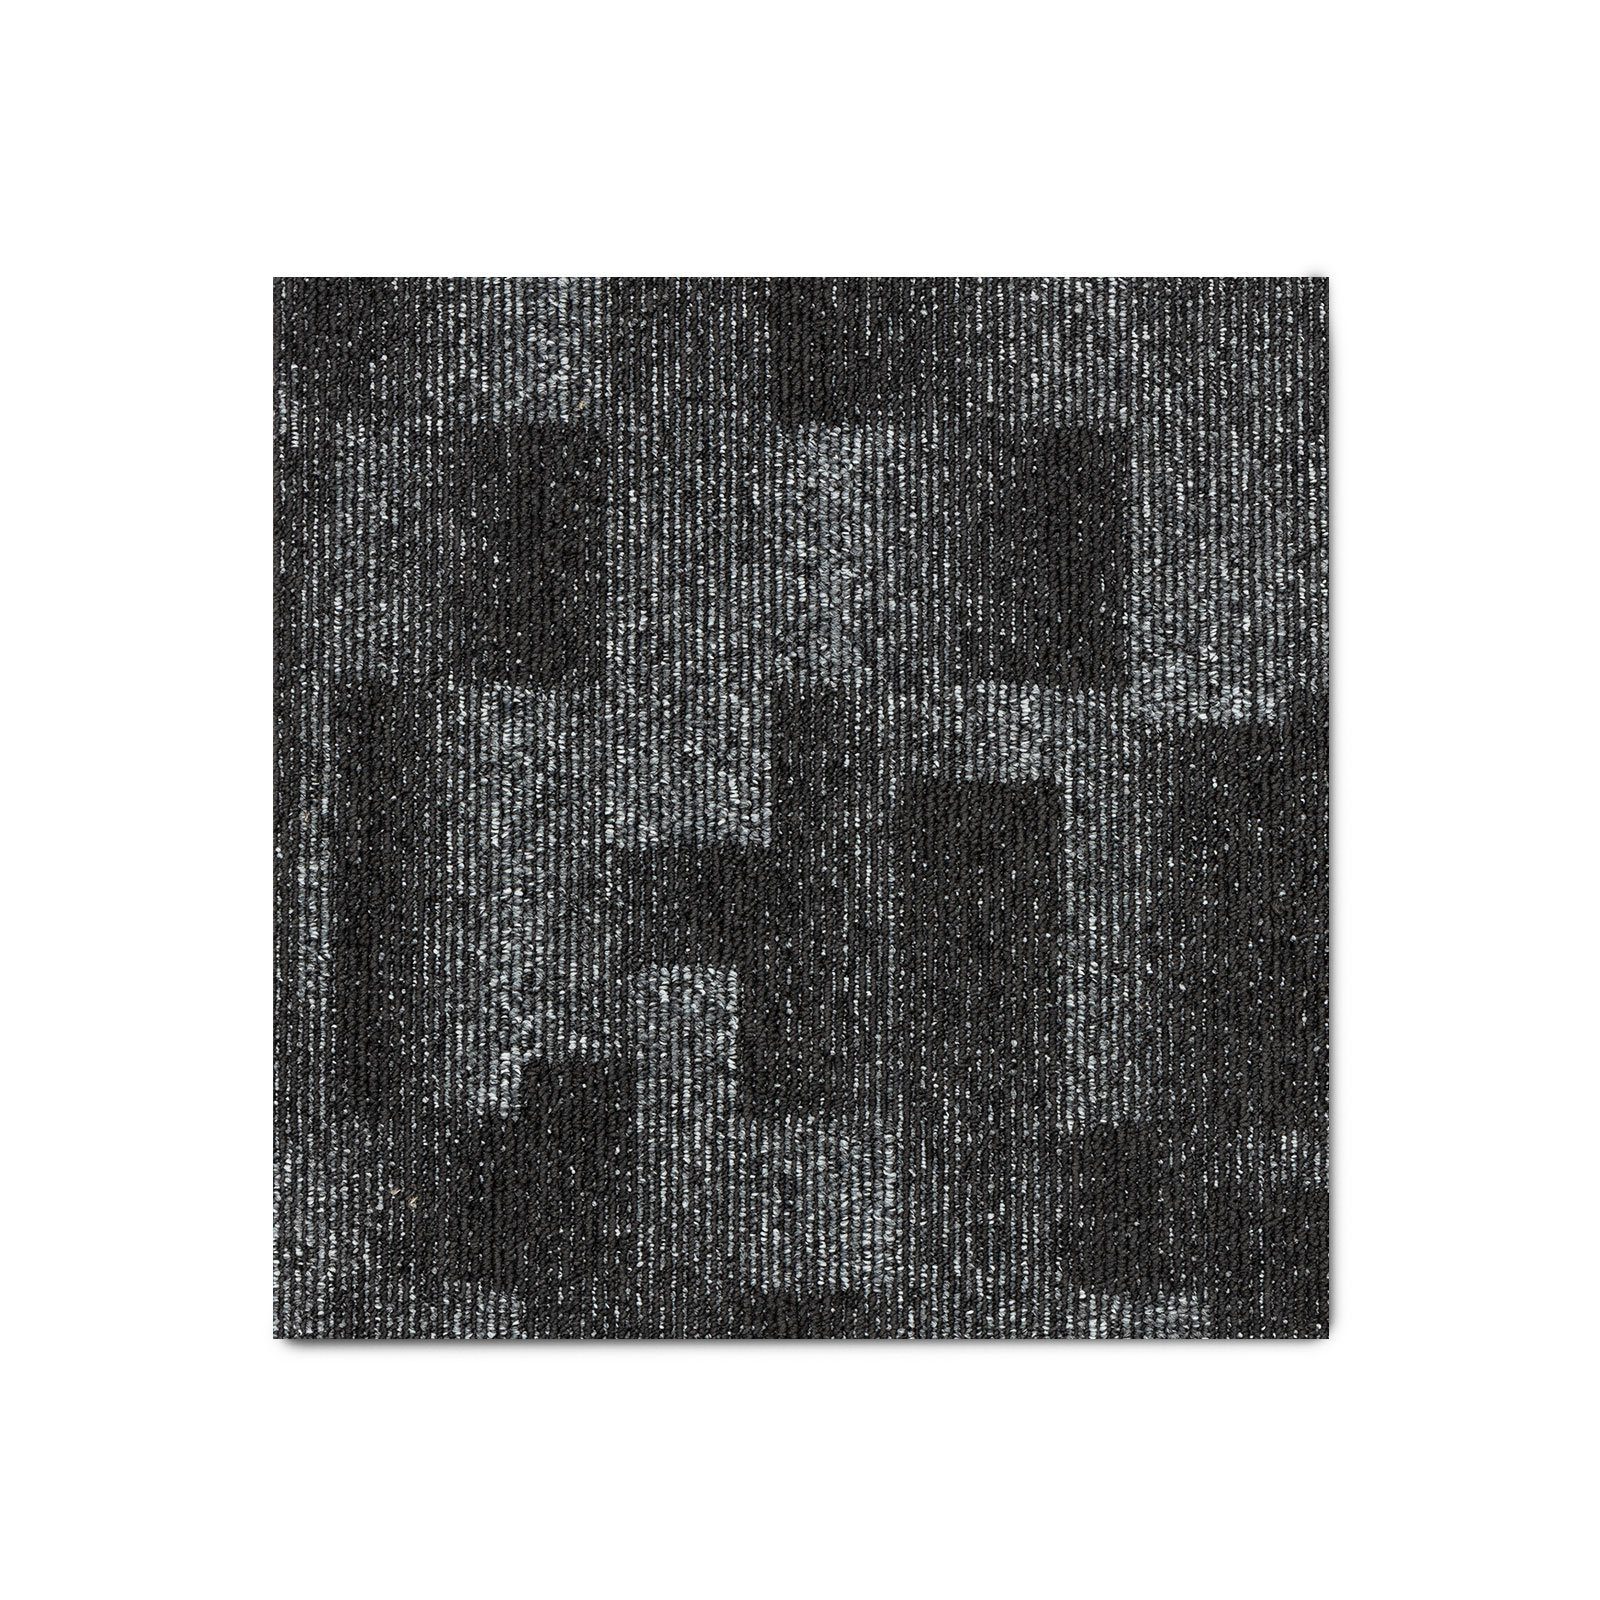 Teppichfliese Santo 50 x 50 cm, Bodenschutz, Erhältlich in 6 Farben, 50 x 50 cm, Floordirekt